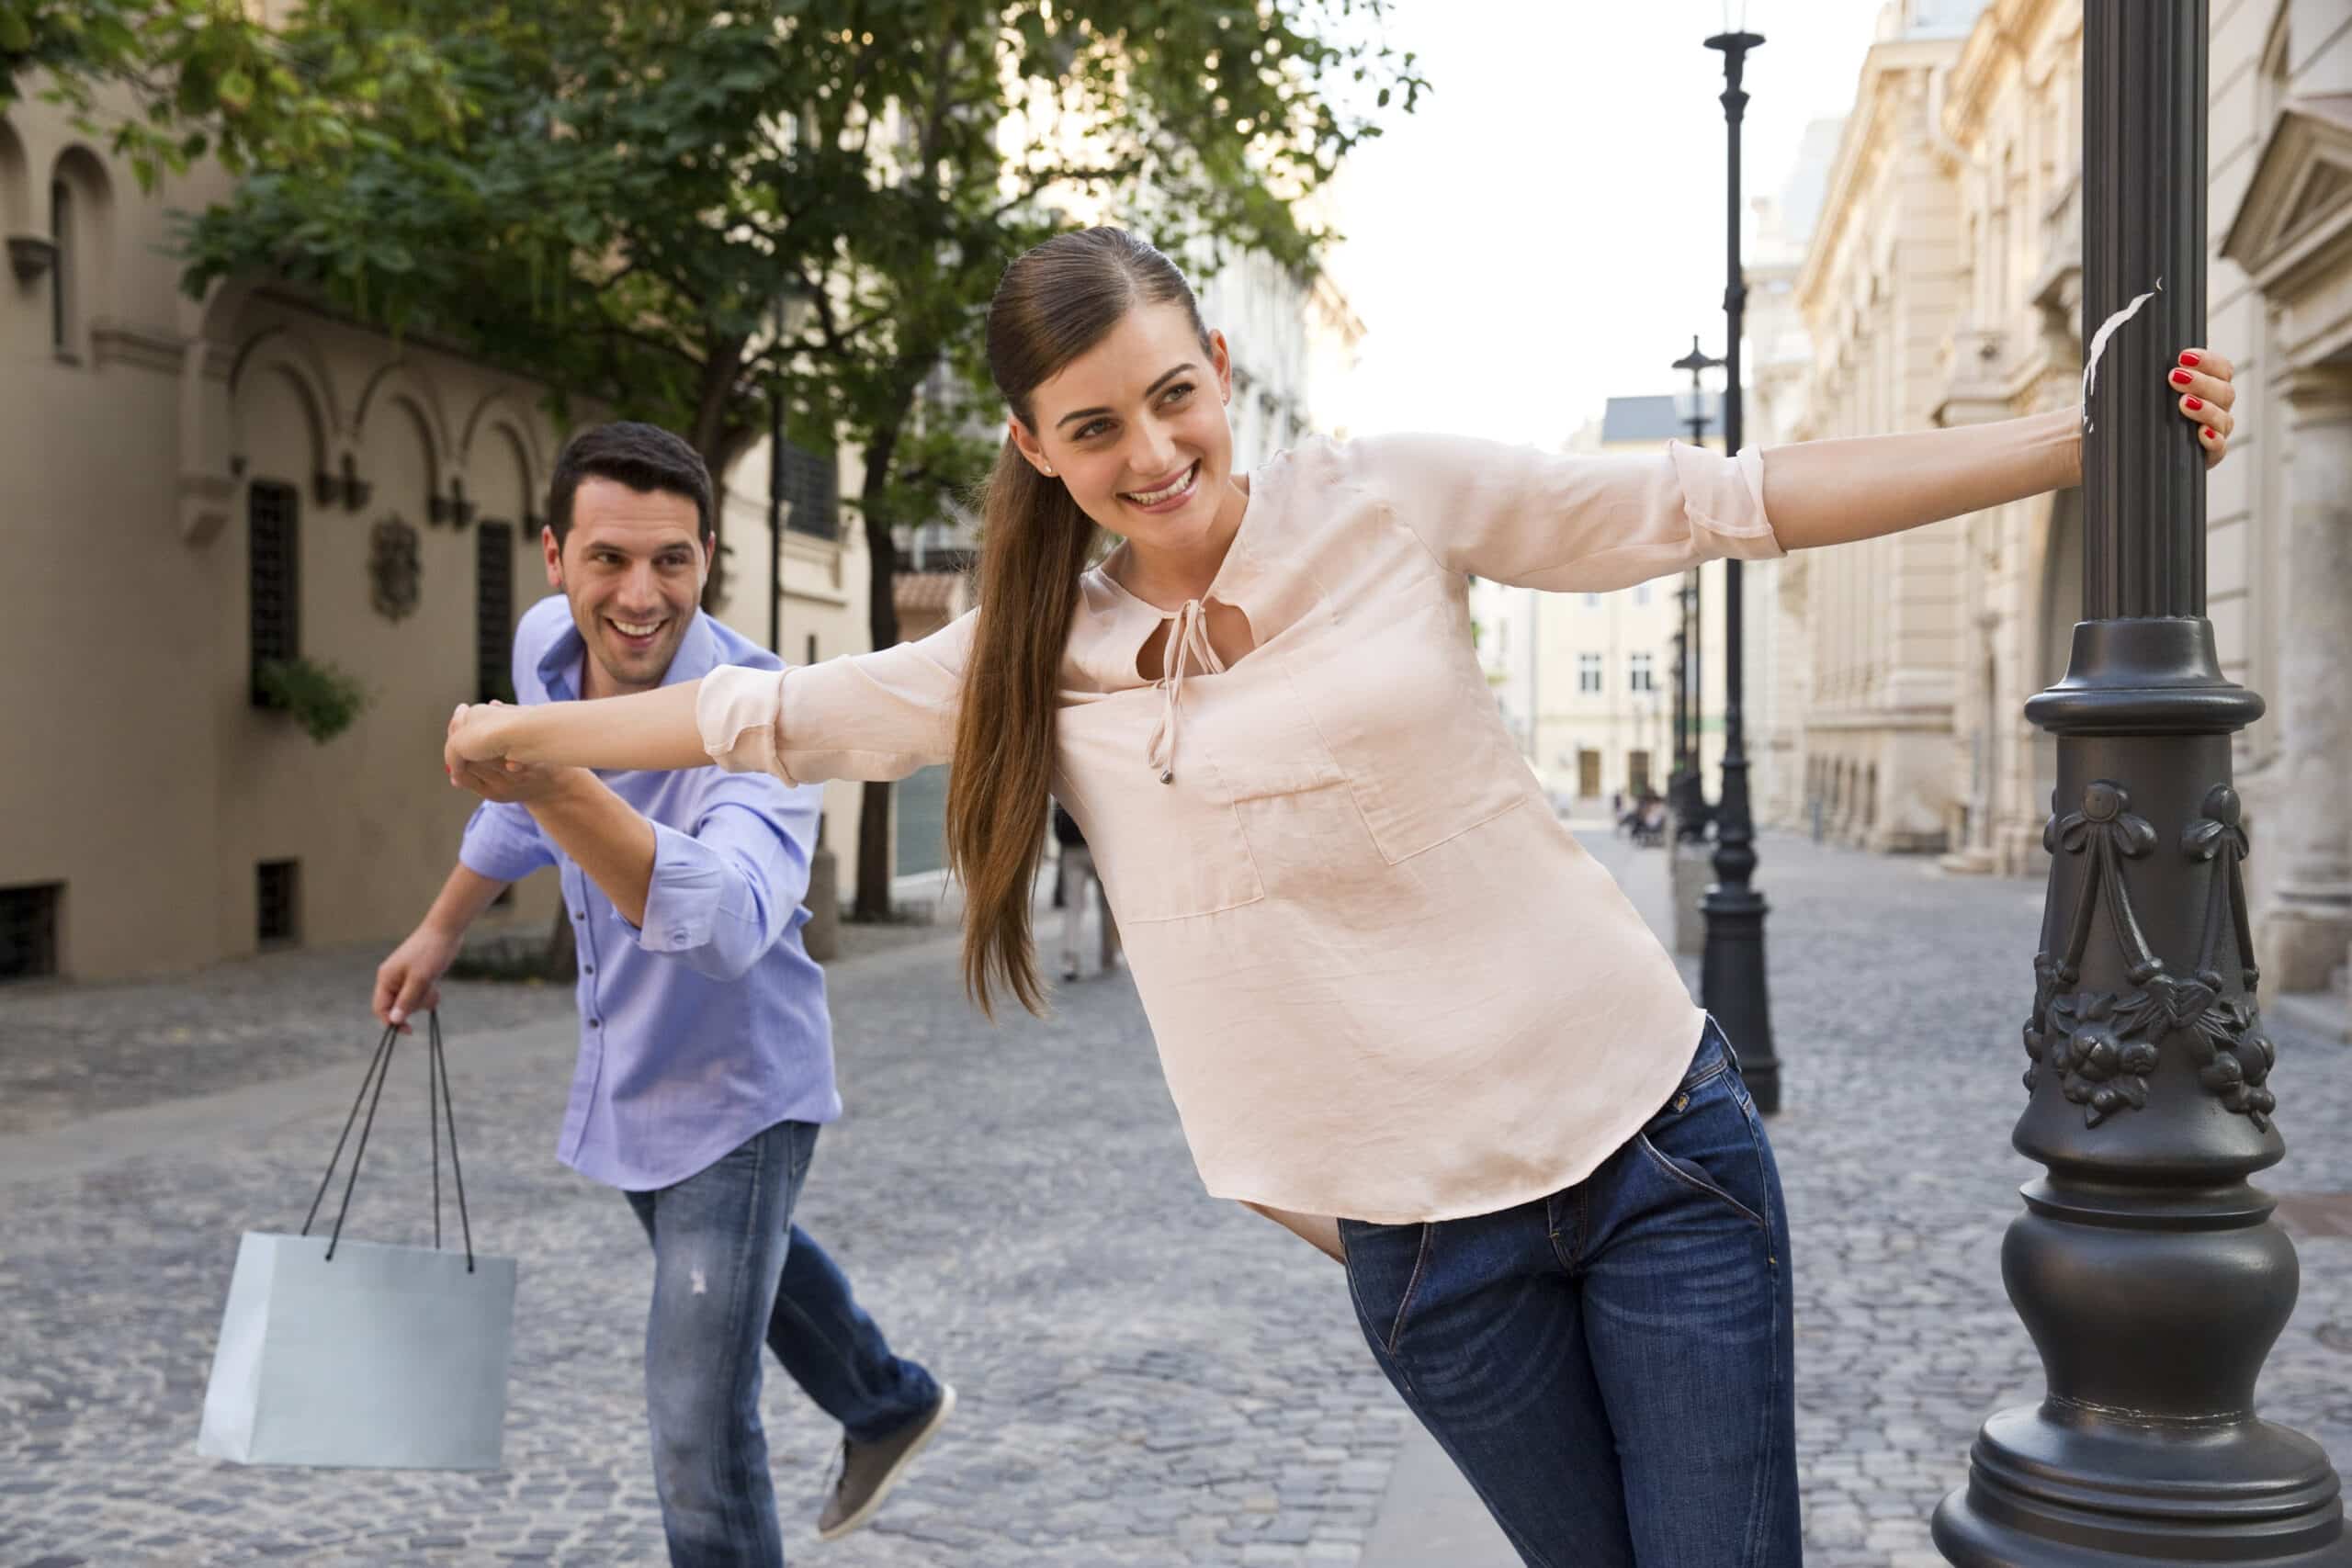 Eine fröhliche Frau schwingt sich um einen Laternenpfahl auf einer Stadtstraße und lächelt in die Kamera, während ein Mann ihr spielerisch mit einer Einkaufstüte in der Hand nachjagt. Warmes Sonnenlicht erhellt die Szene. © Fotografie Tomas Rodriguez